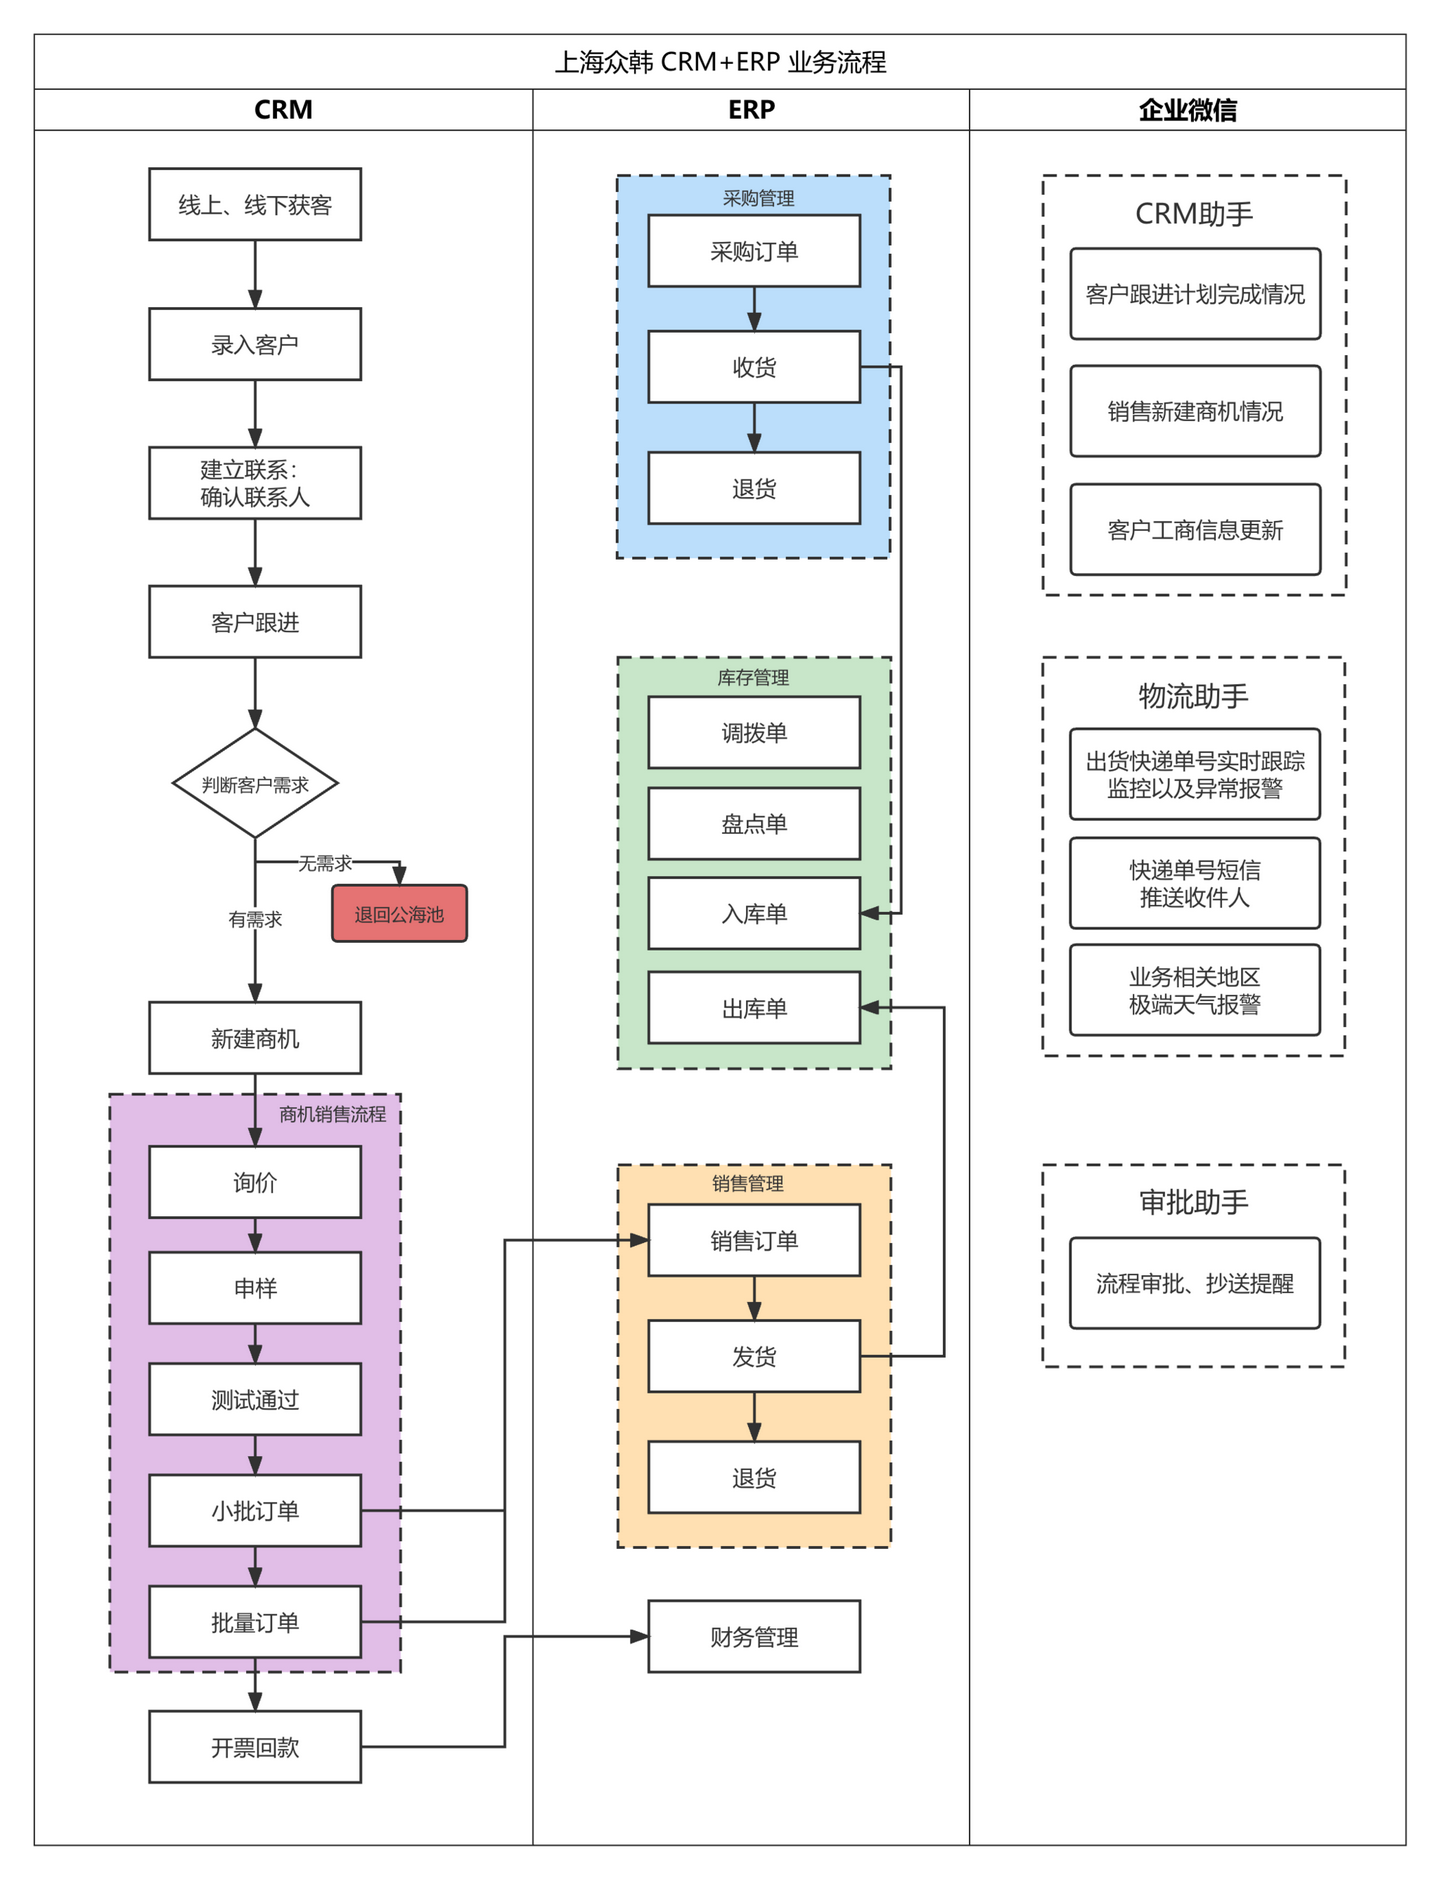 上海众韩 X 简道云业务框架图